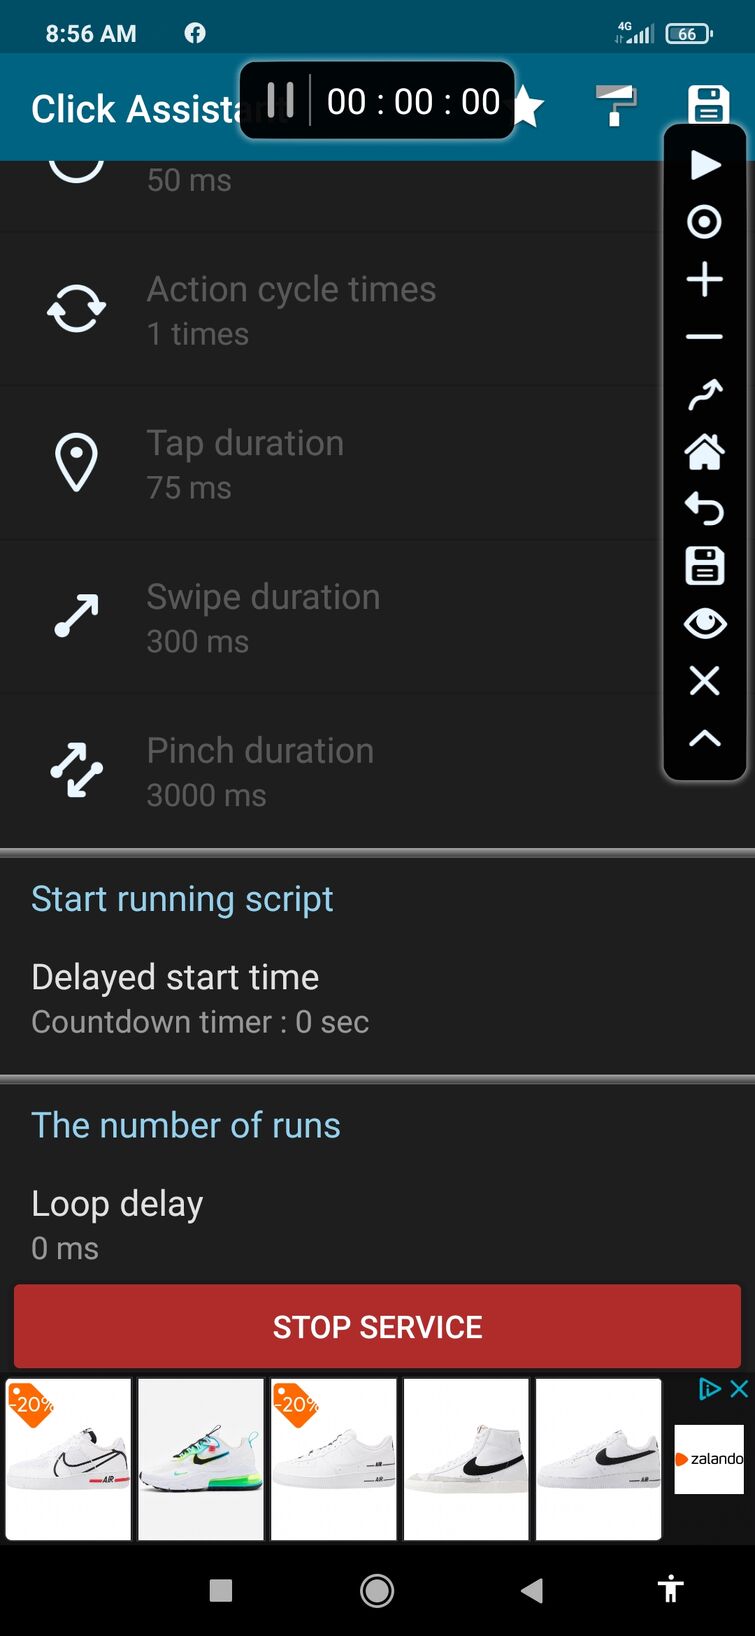 My Auto Clicker Mobile Android Fandom - auto clicker for roblox texting simulator